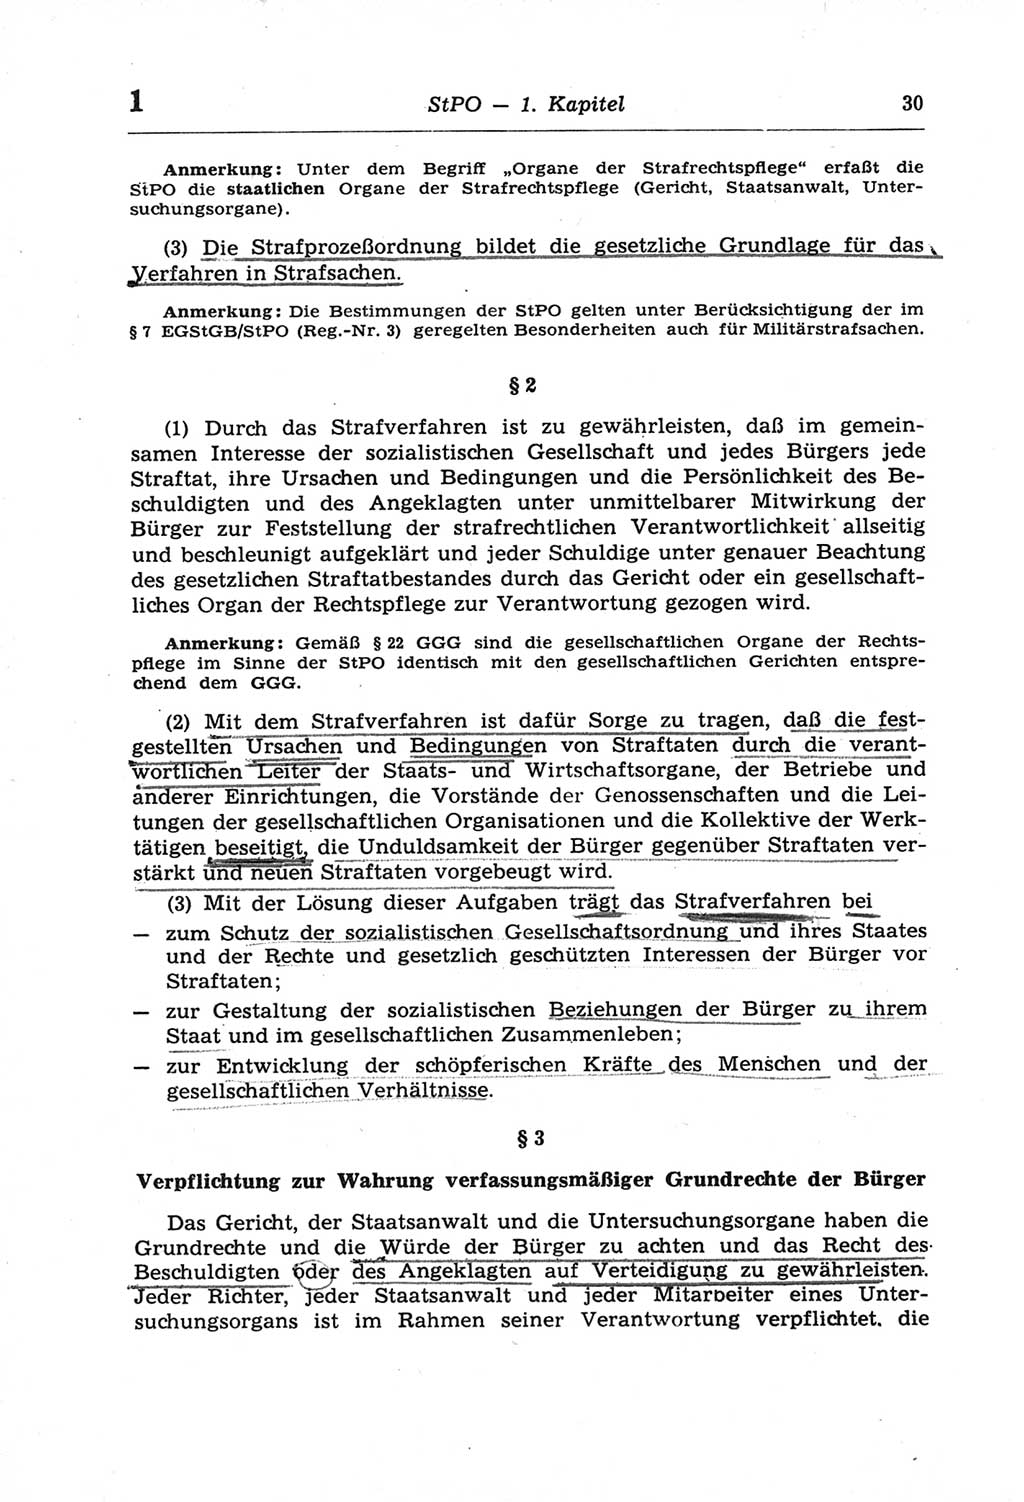 Strafprozeßordnung (StPO) der Deutschen Demokratischen Republik (DDR) und angrenzende Gesetze und Bestimmungen 1968, Seite 30 (StPO Ges. Bstgn. DDR 1968, S. 30)